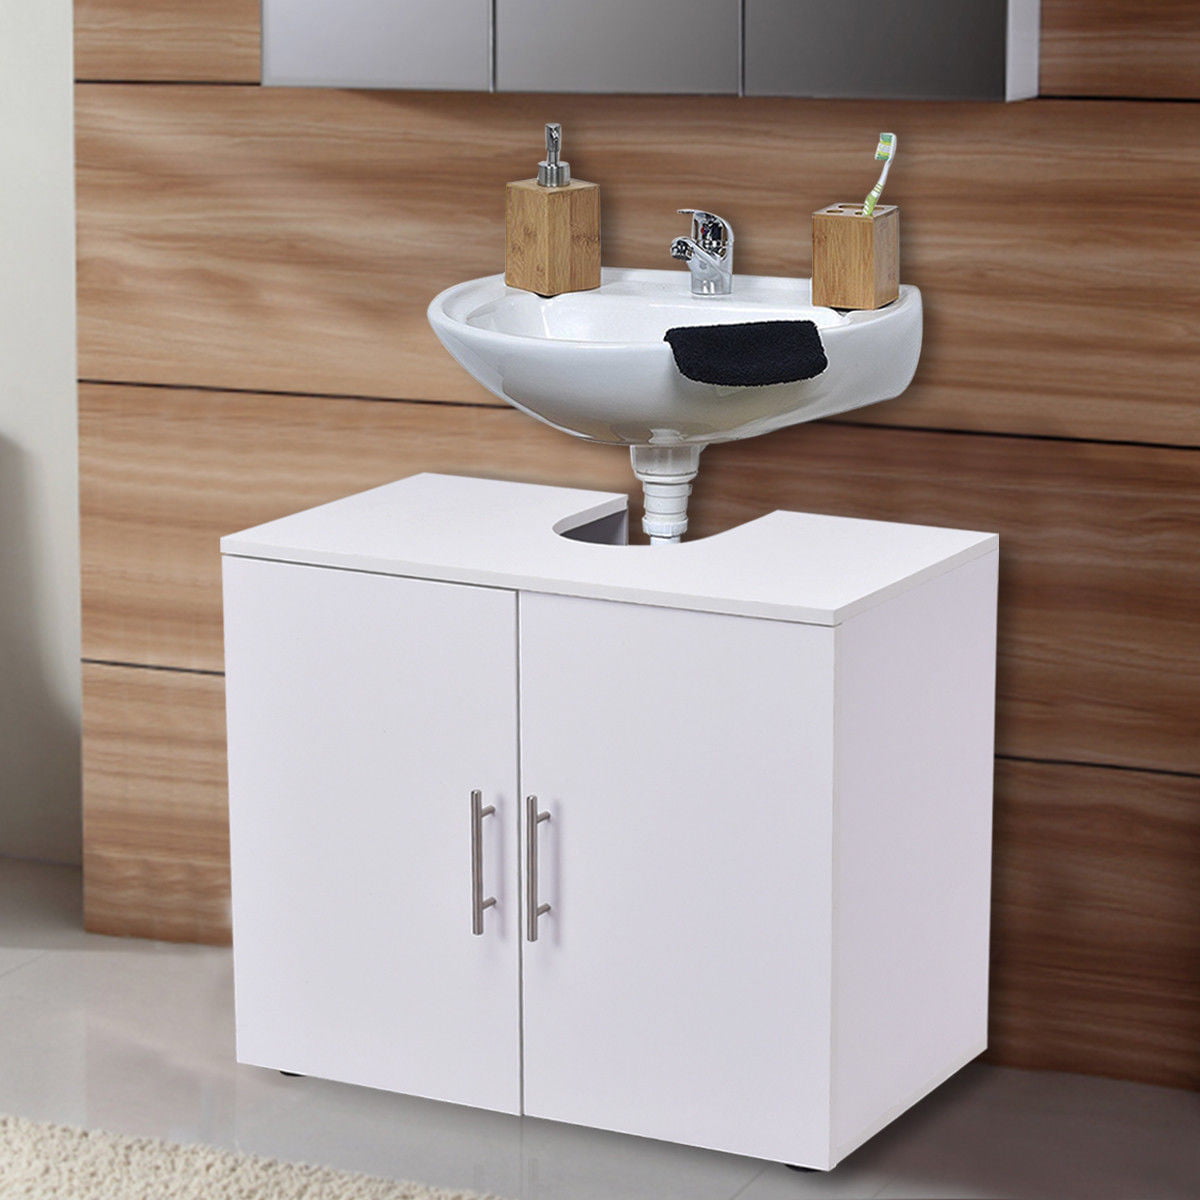 costway non pedestal under sink bathroom storage vanity cabinet space saver organizer walmart com